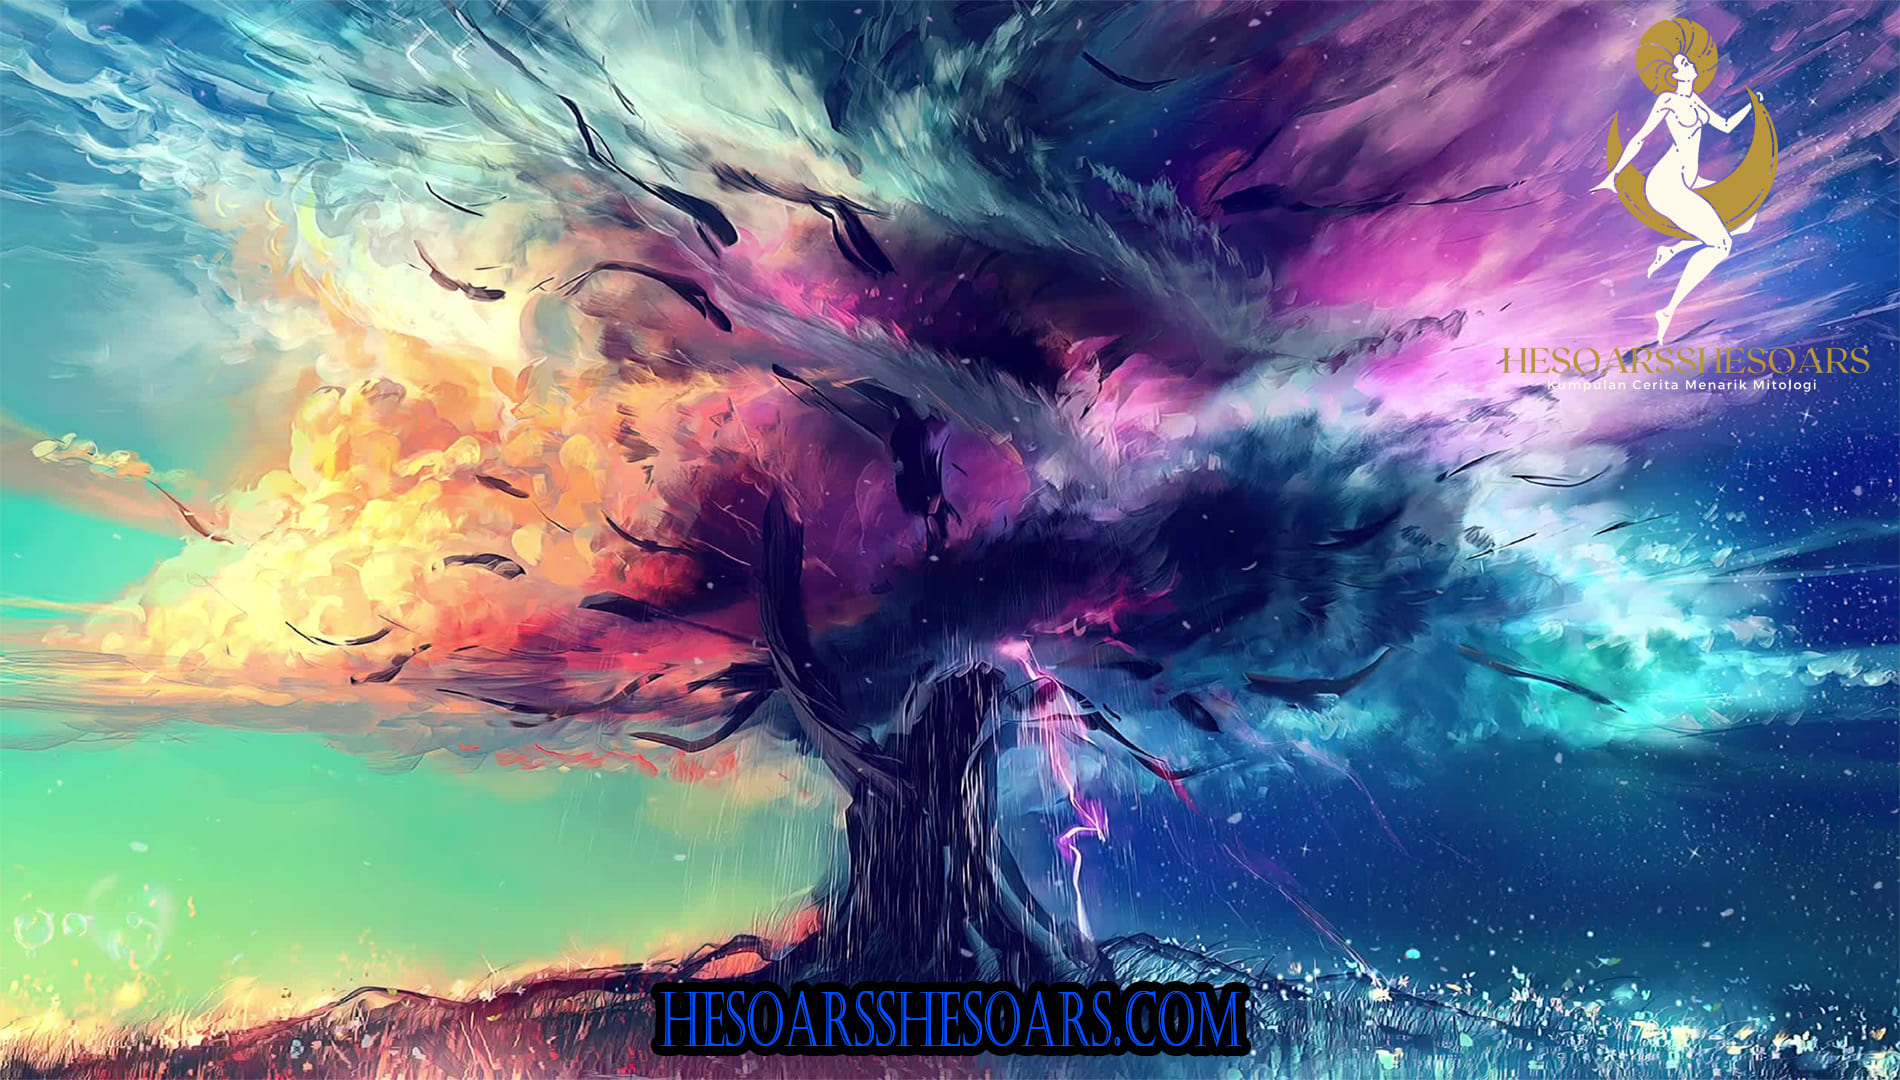 Yggdrasil: The Cosmic Tree of Norse Mythology